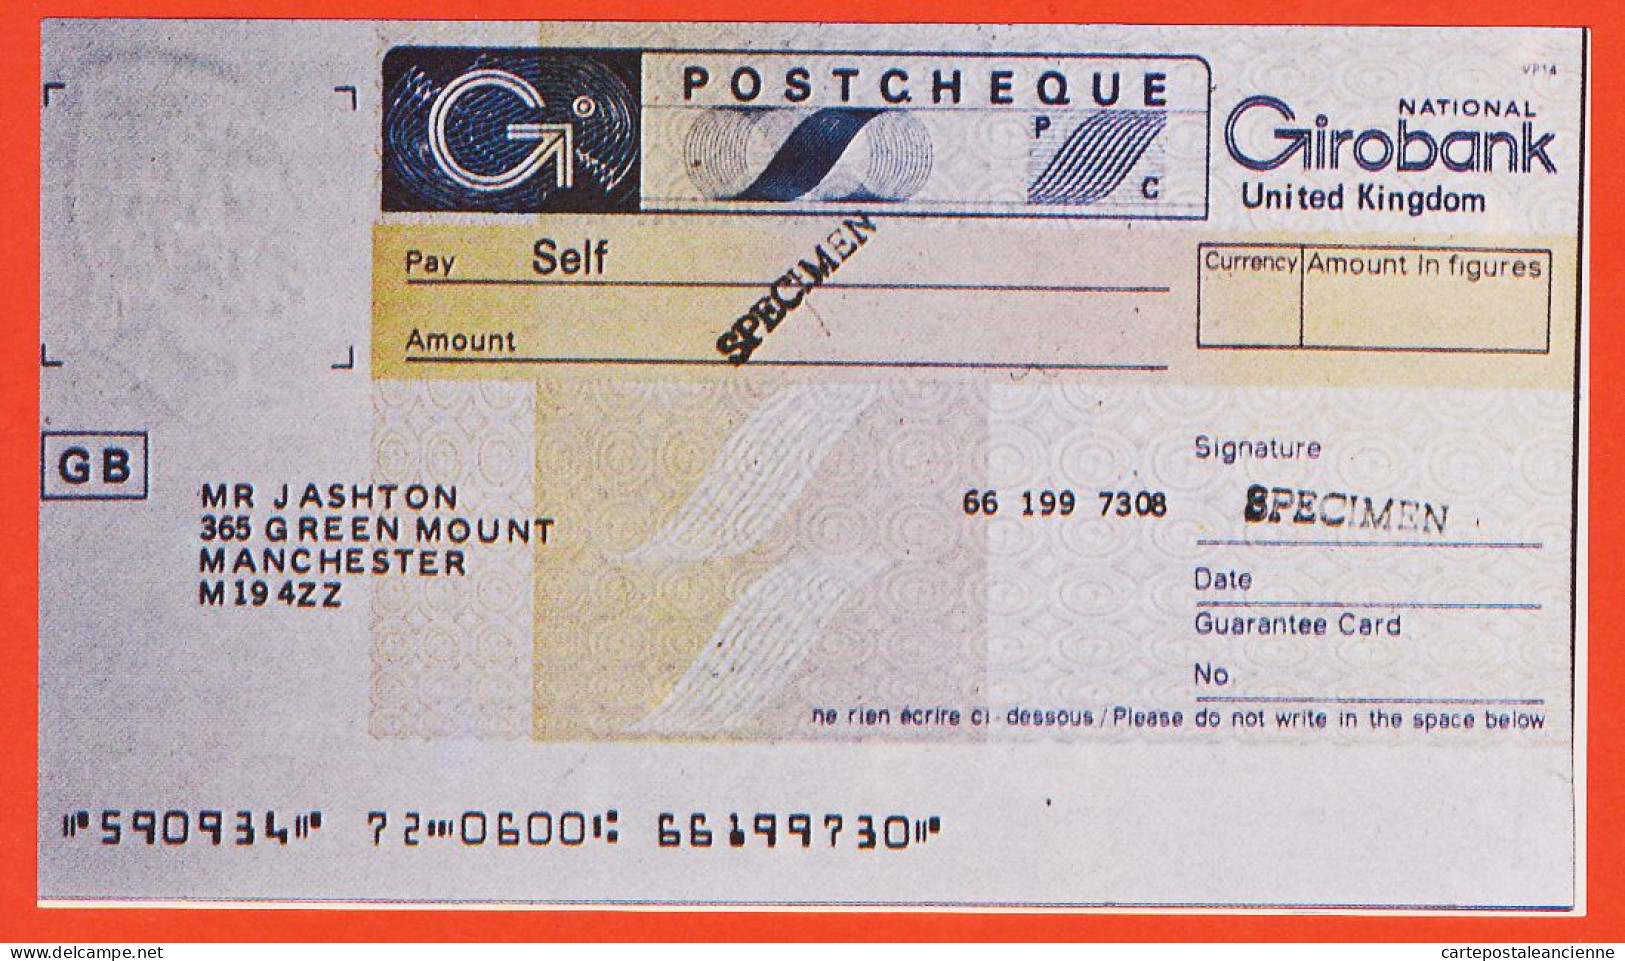 7211 / ⭐ ♥️ National United Kingdom Specimen Postcheque Photocopie Outil Dictatique PTT Doc Instruction LA POSTE - Chèques & Chèques De Voyage